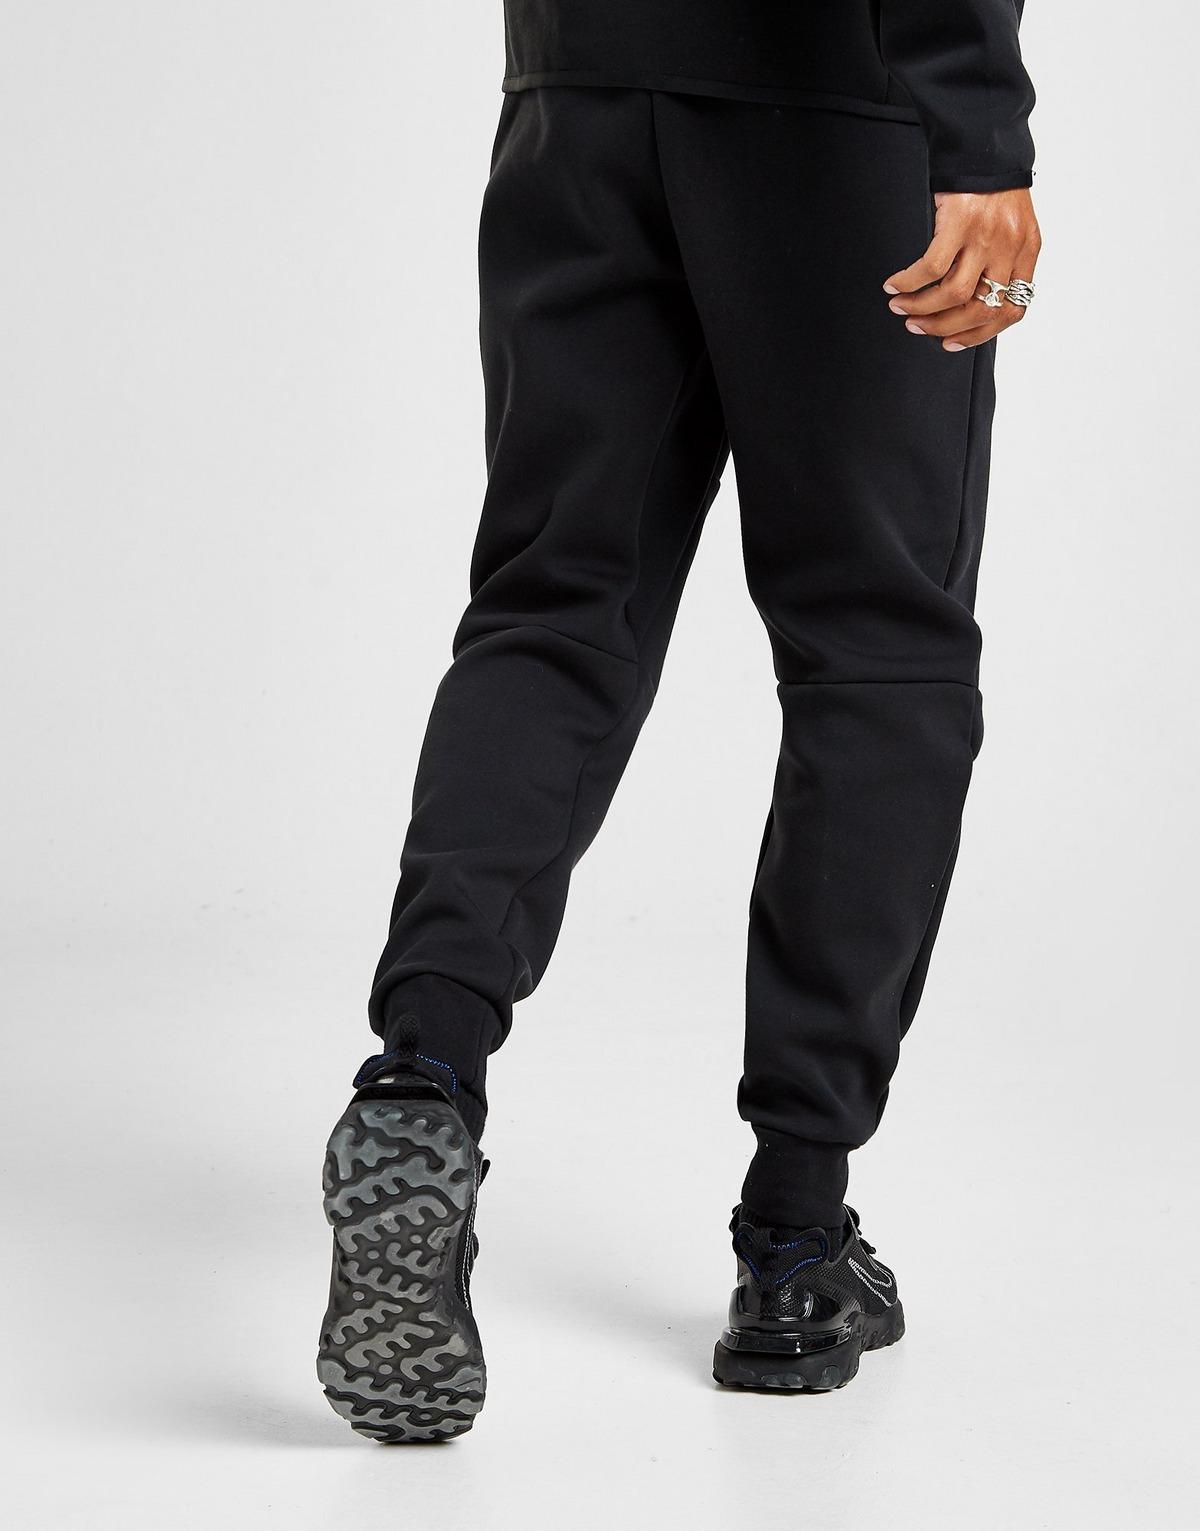 Nike Tech Fleece Joggers in Black for Men - Lyst